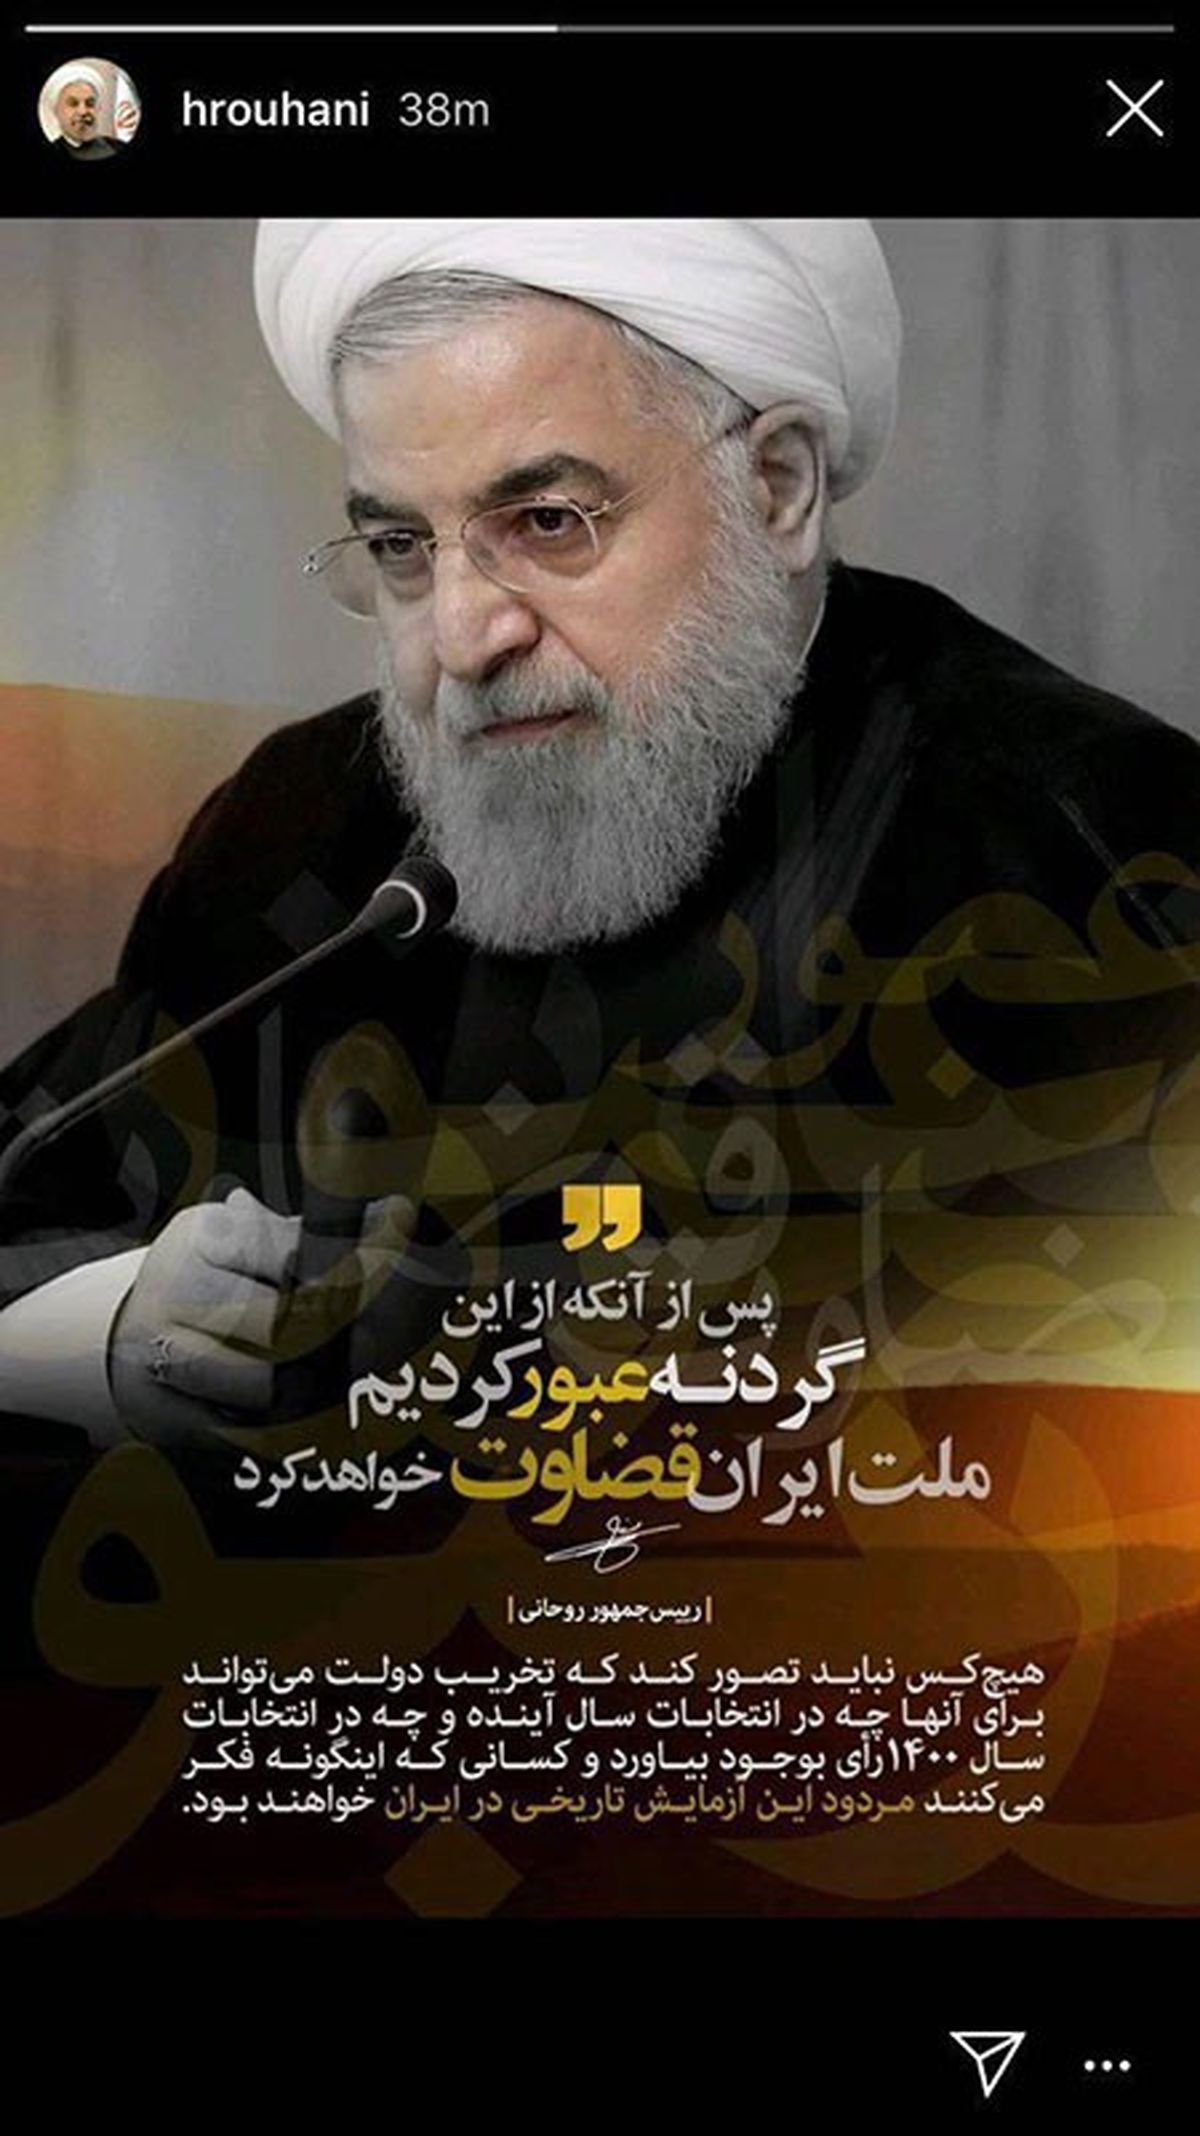 روحانی: بعدها، ملت ایران قضاوت خواهد کرد